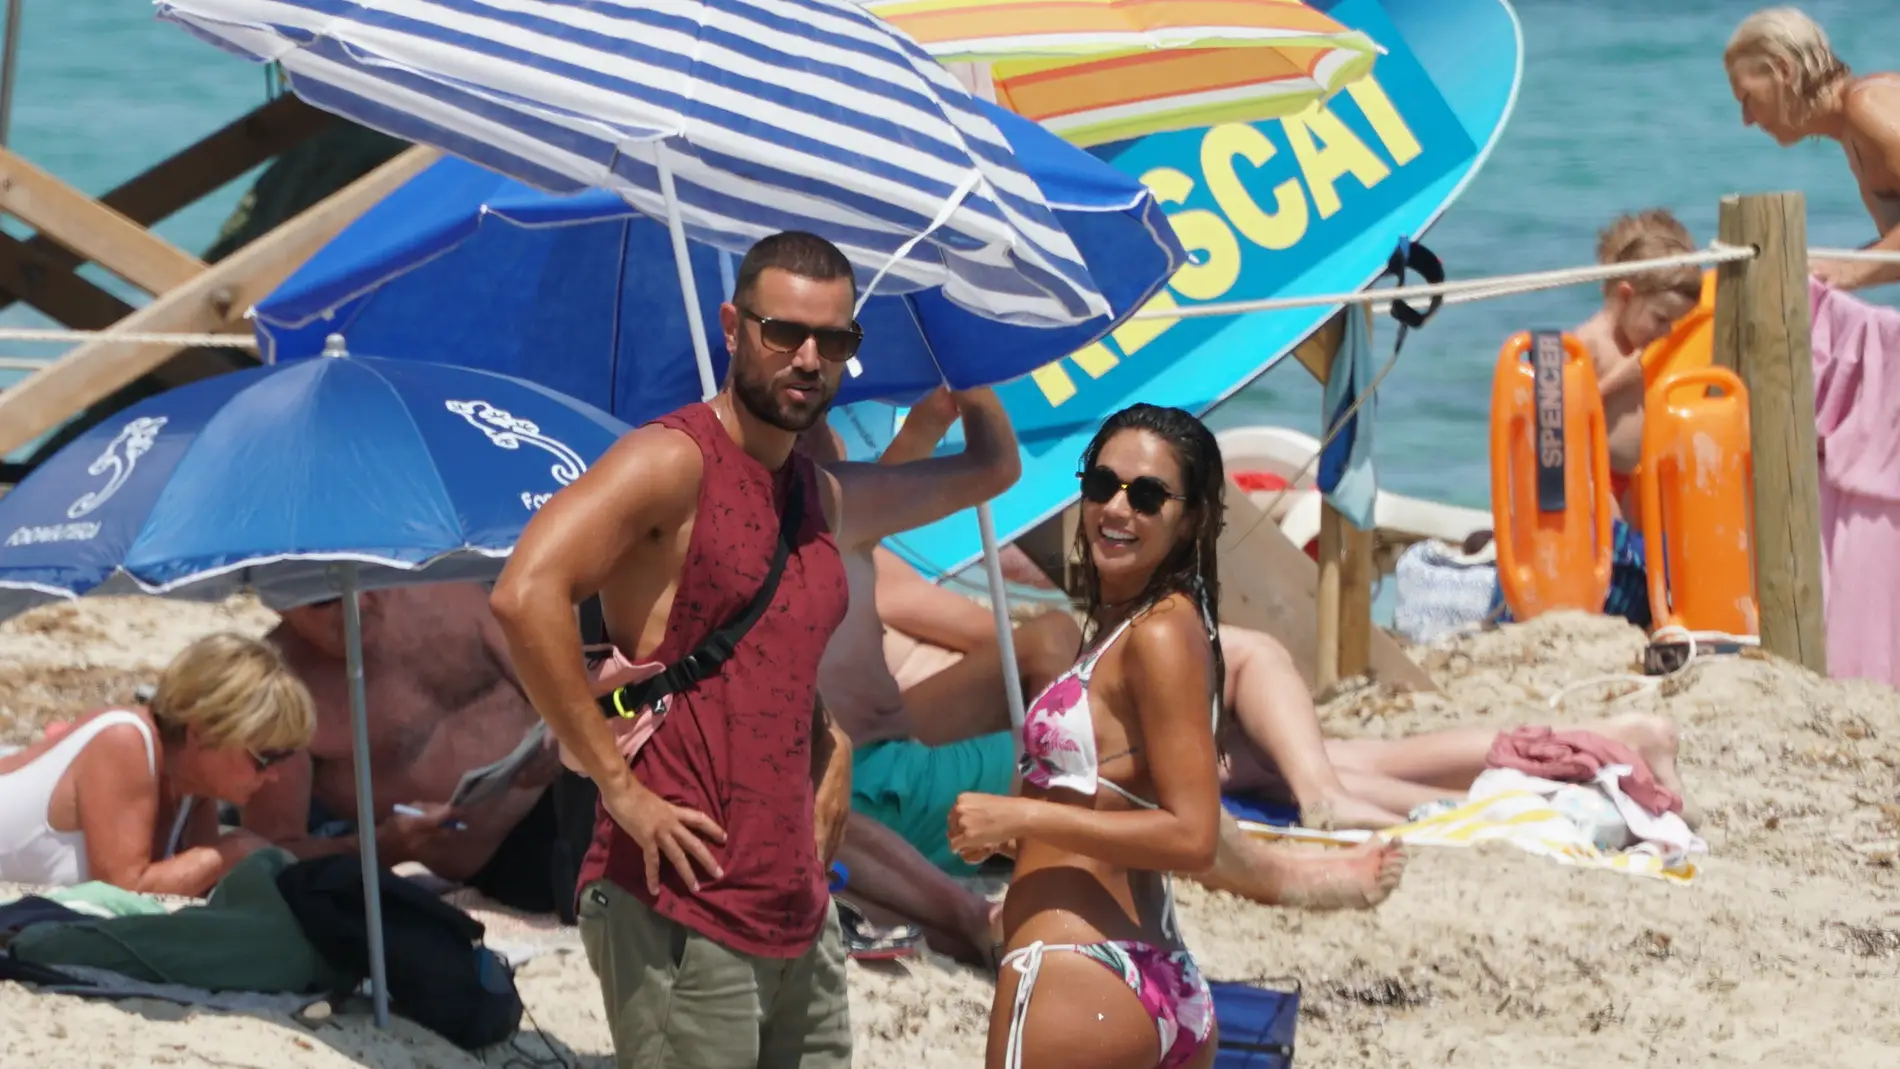 Lara Álvarez y su nueva ilusión en la playa de Formentera 